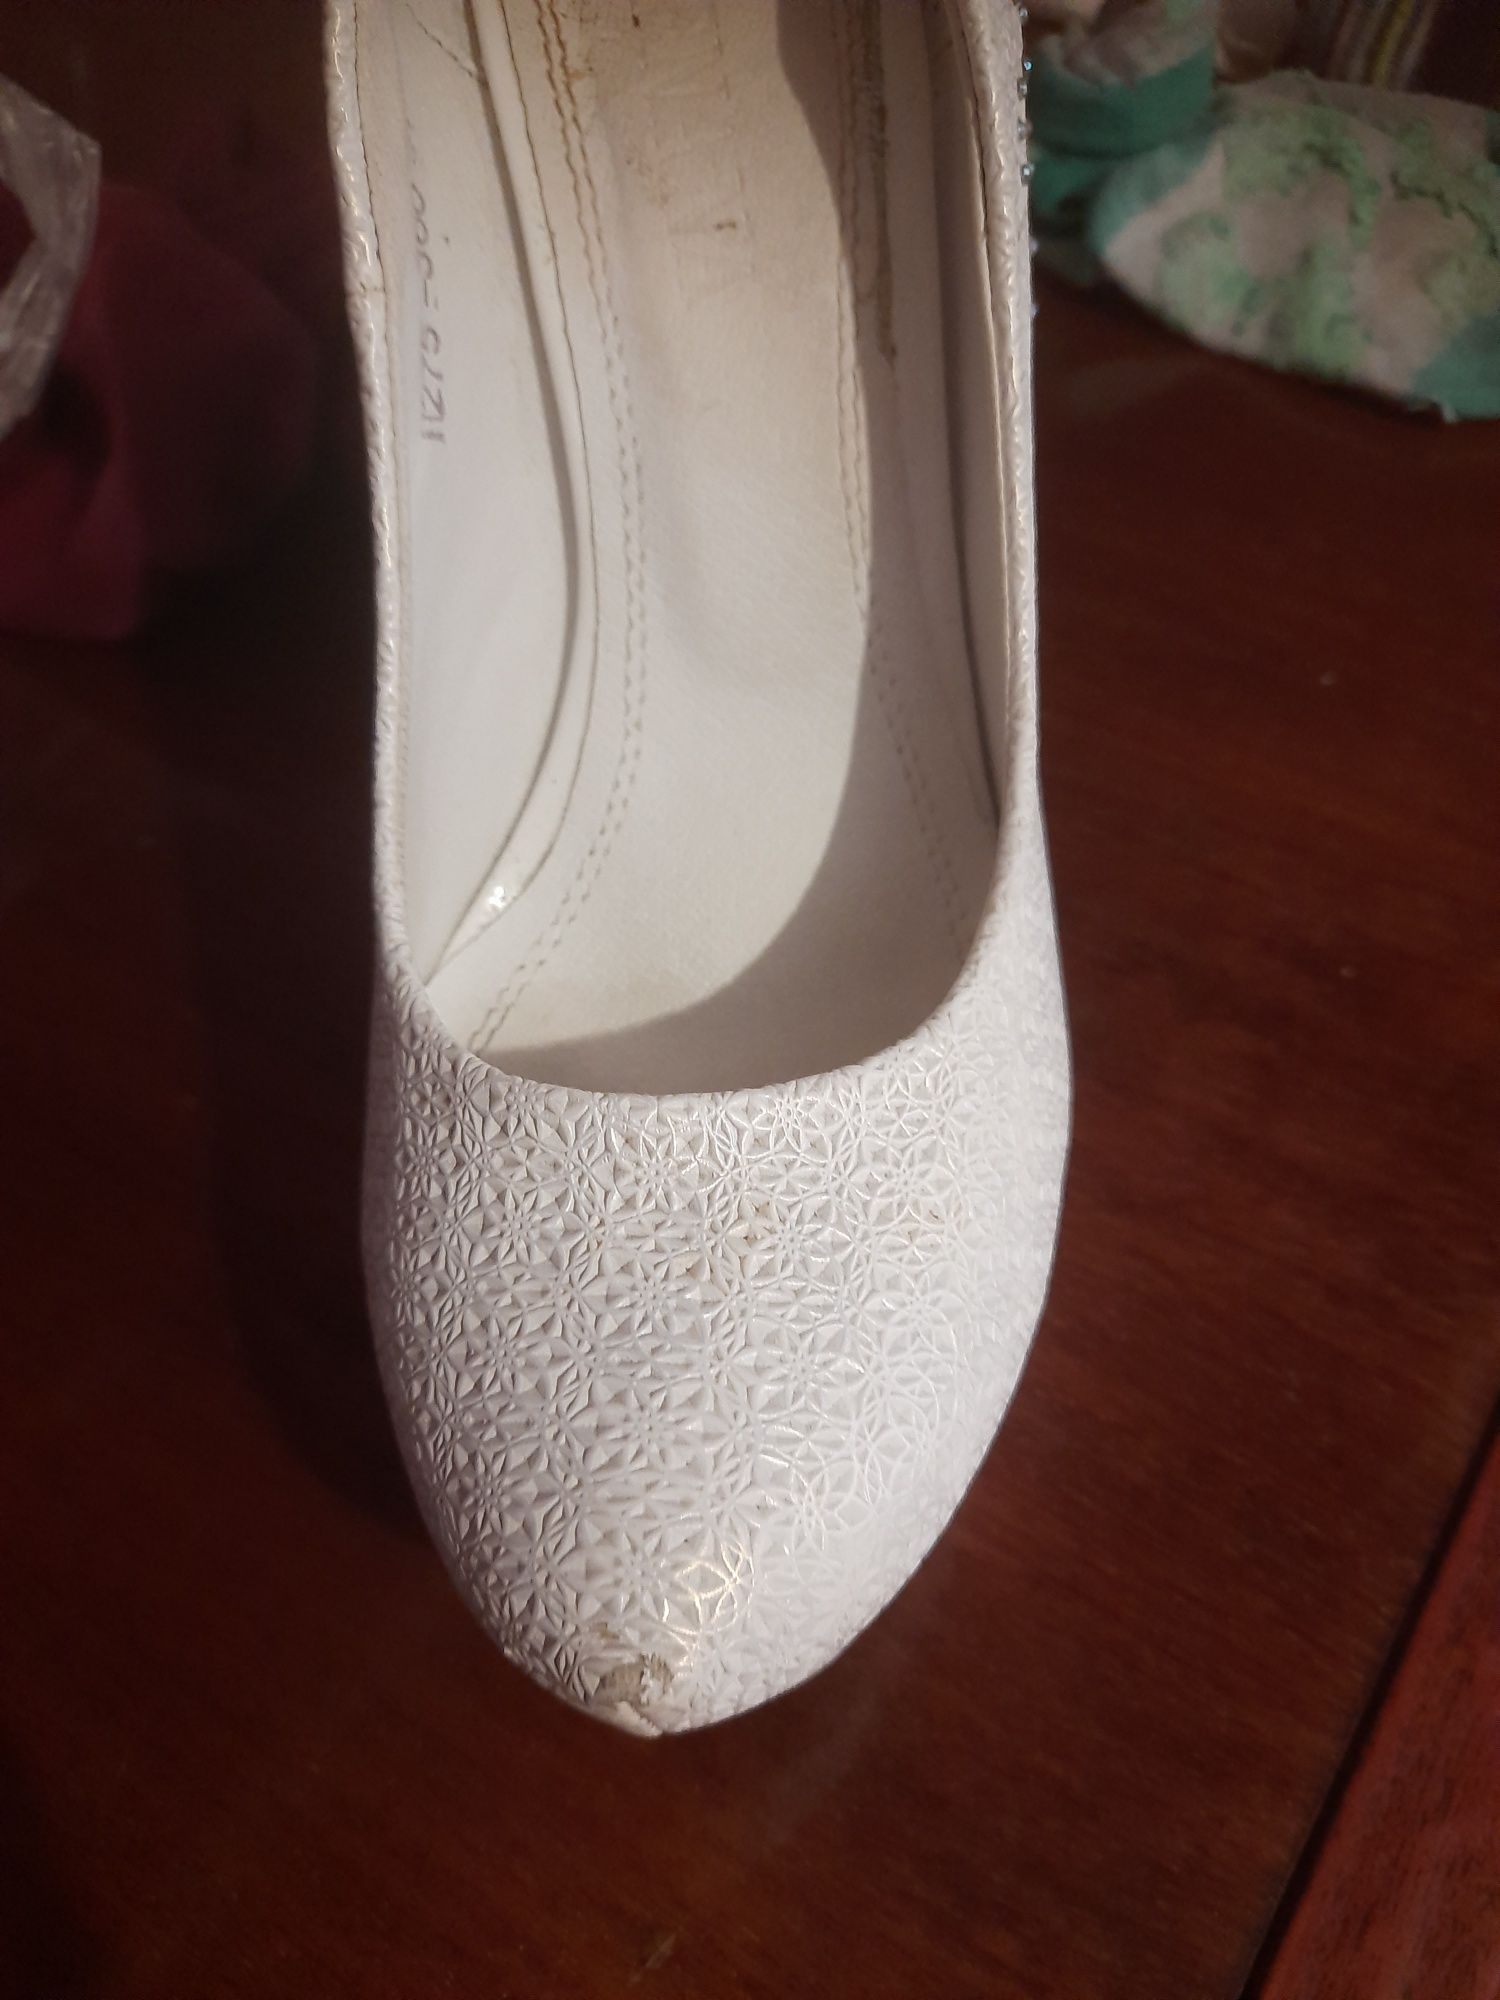 Білі весільні туфлі